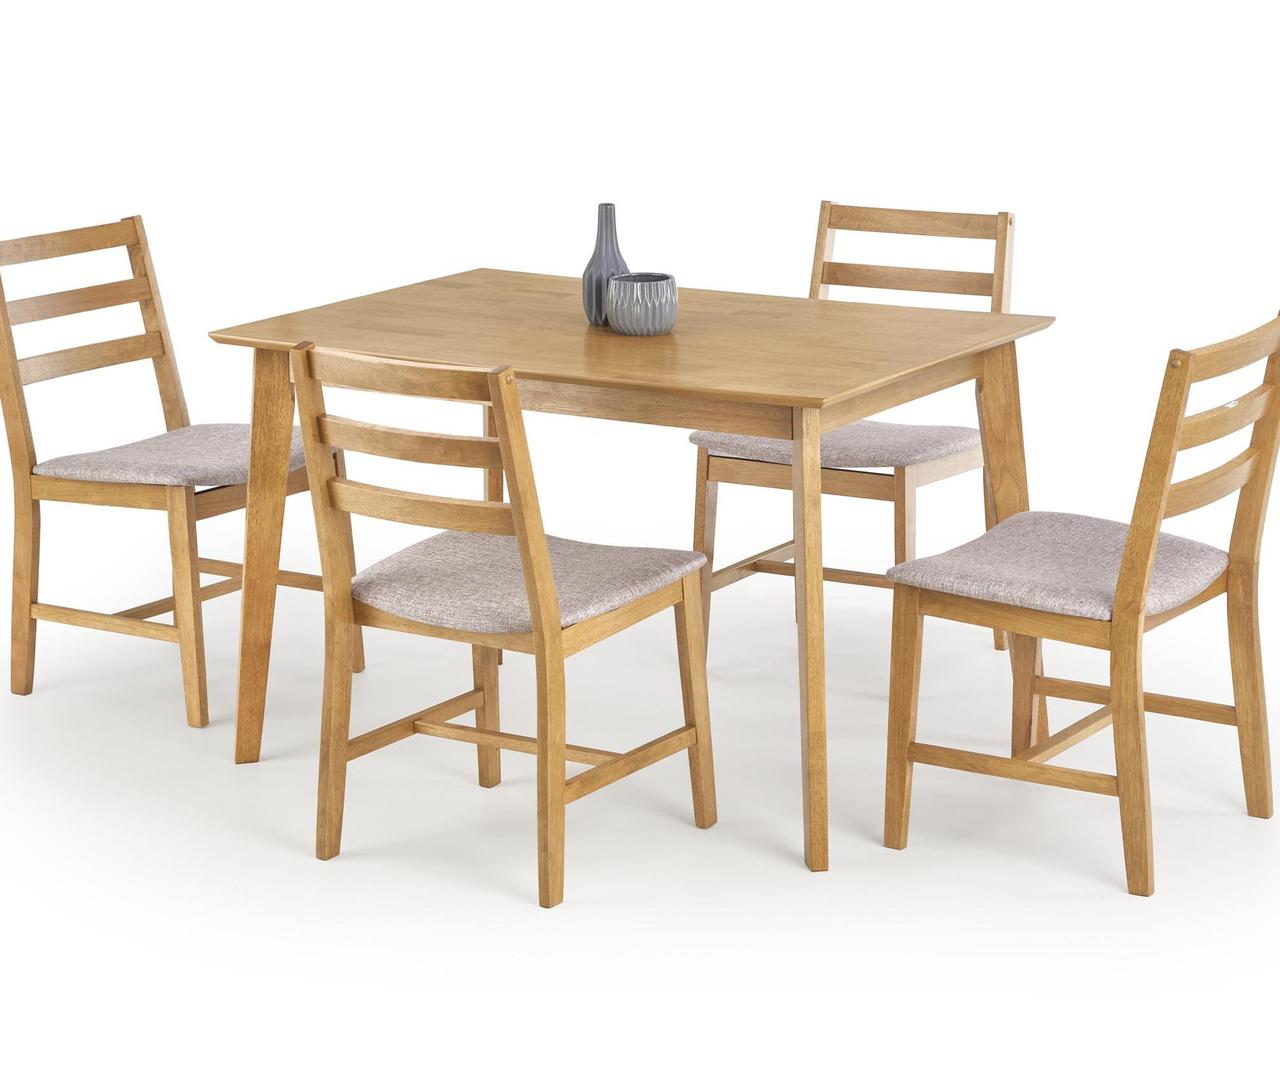 Комплект столовой мебели Halmar CORDOBA (стол + 4 стула) дуб, фото 1